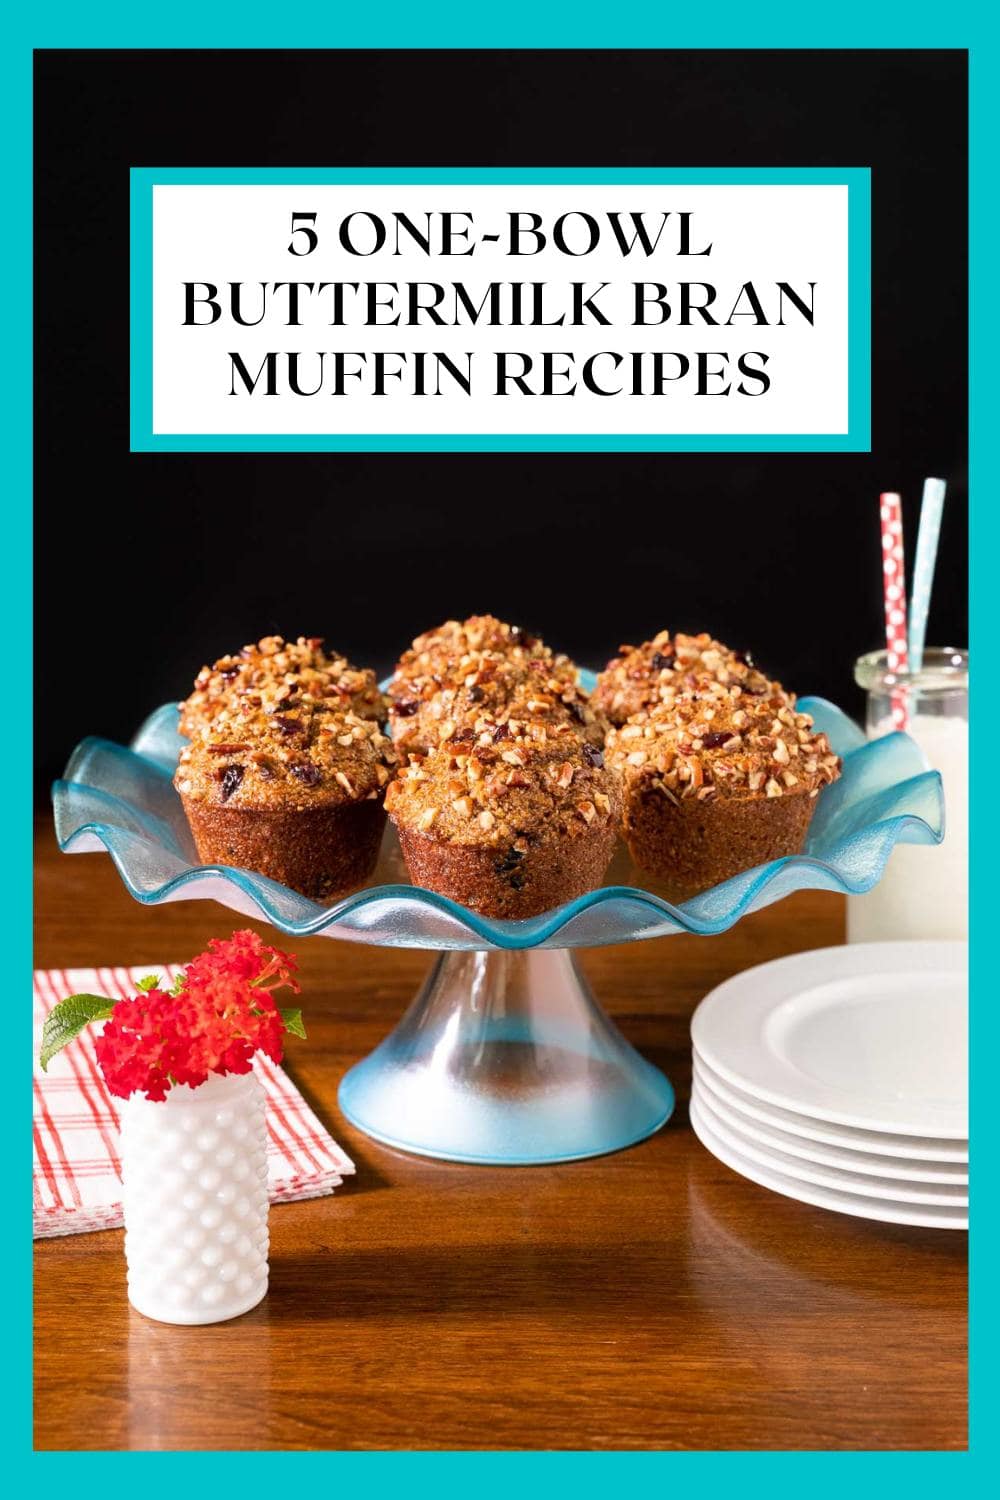 5 One-Bowl Buttermilk Bran Muffin Recipes